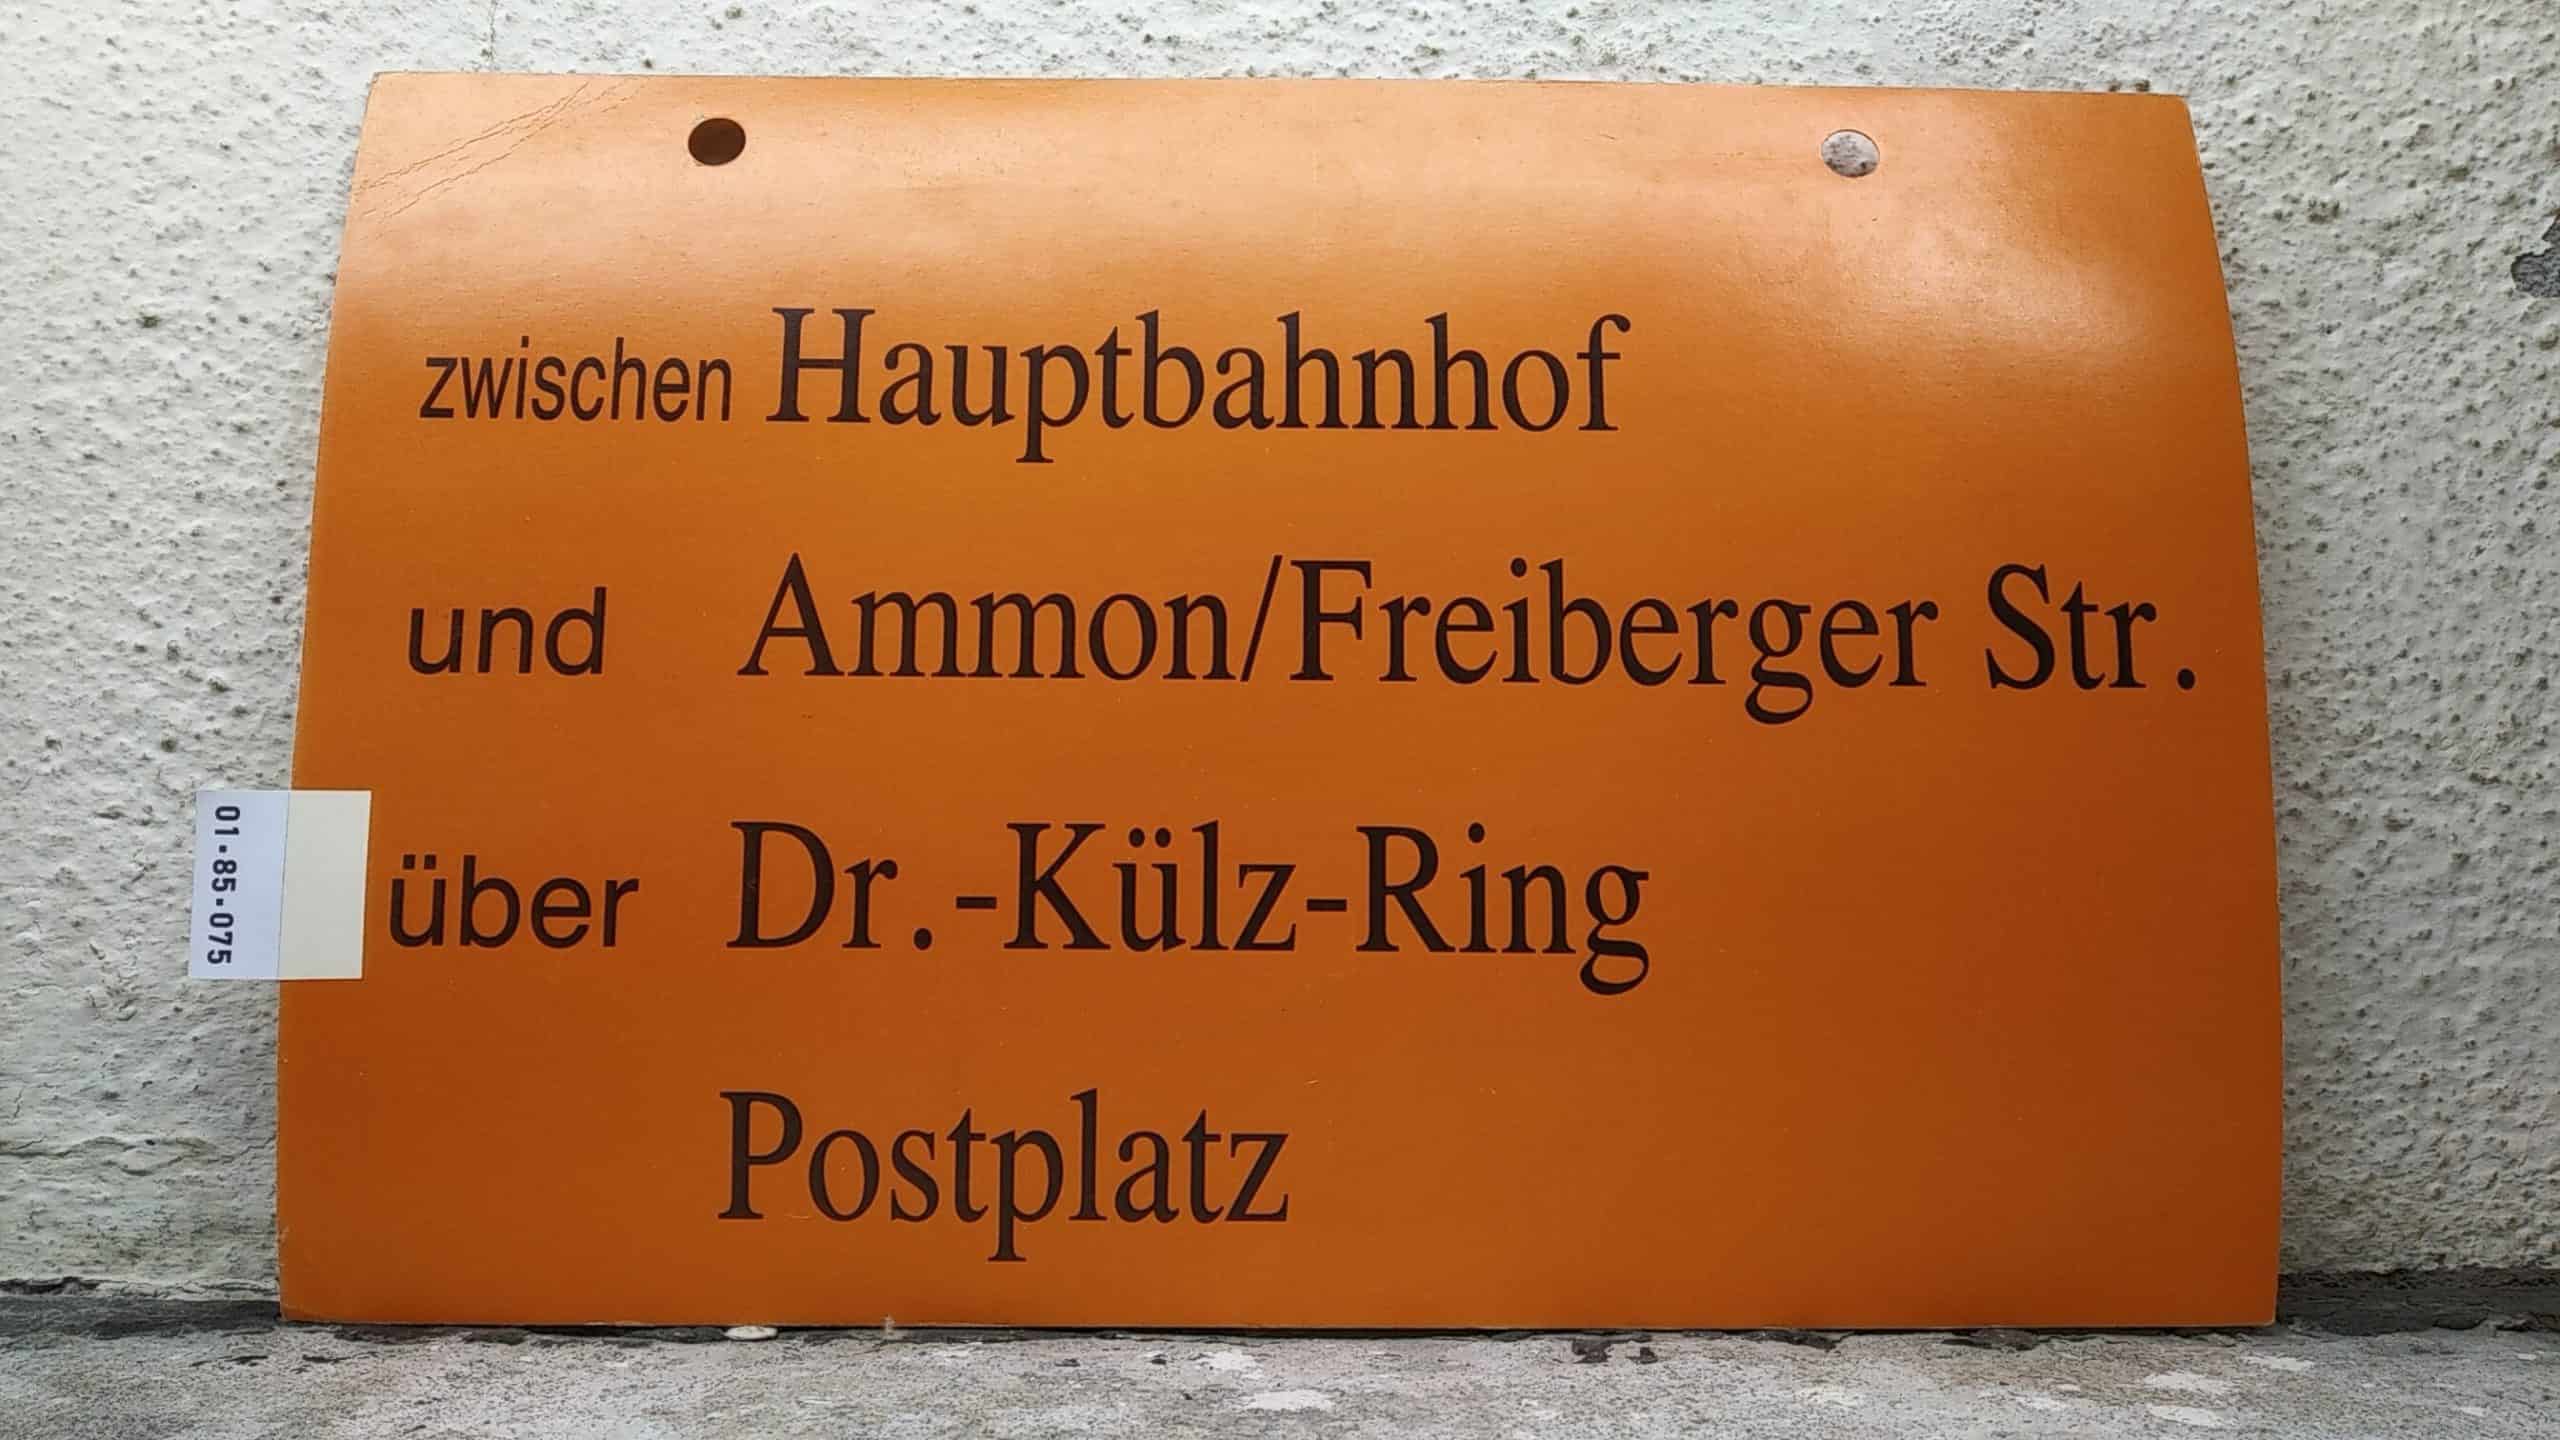 Ein seltenes Straßenbahn-Umleitungsschild aus Dresden: zwischen Hauptbahnhof und Ammon-/Freiberger Str. über Dr.-Külz-Ring Postplatz